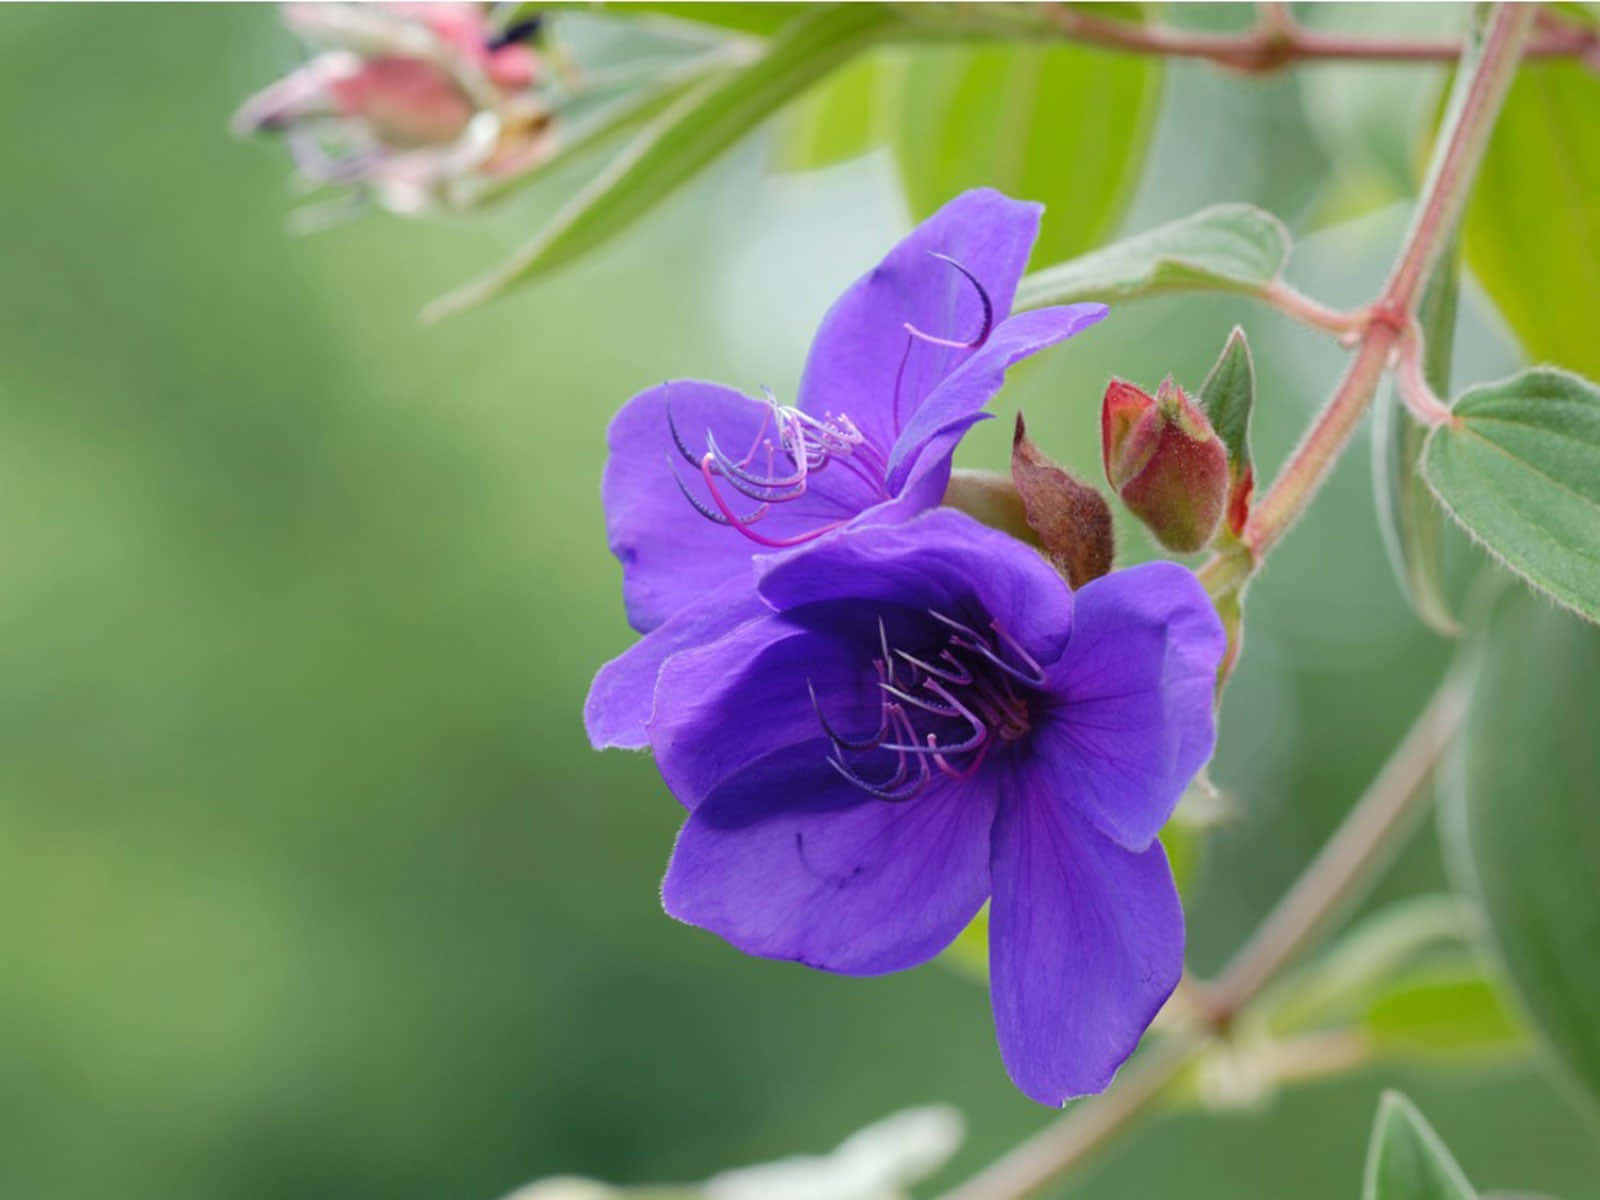 Mystic beauty of a purple flower